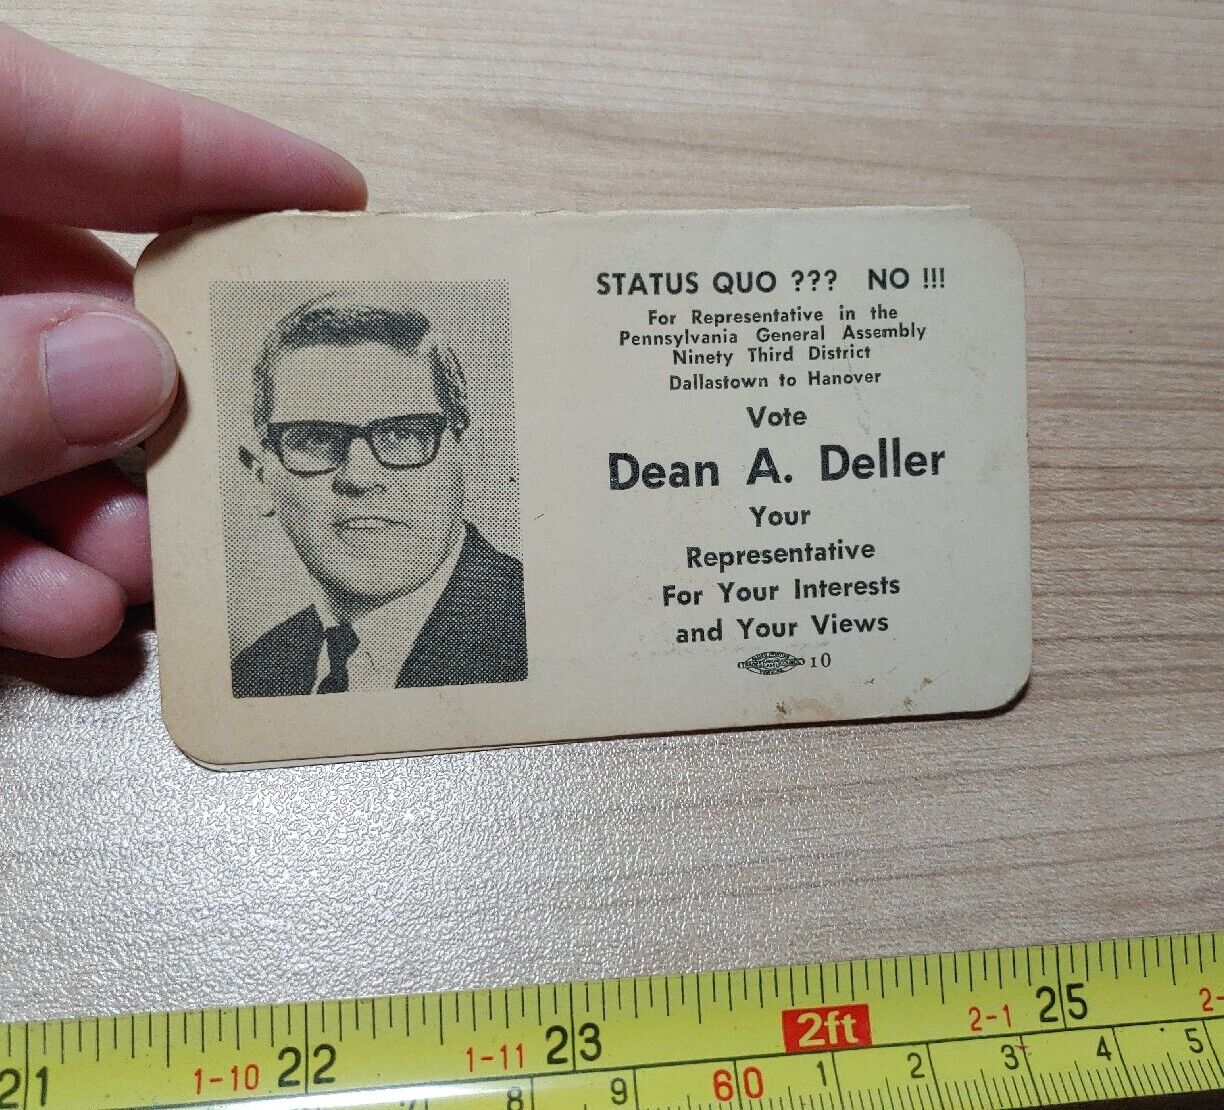 Vtg 1968-69 Dean A. Deller Dallastown Hanover PA Representative Political Card